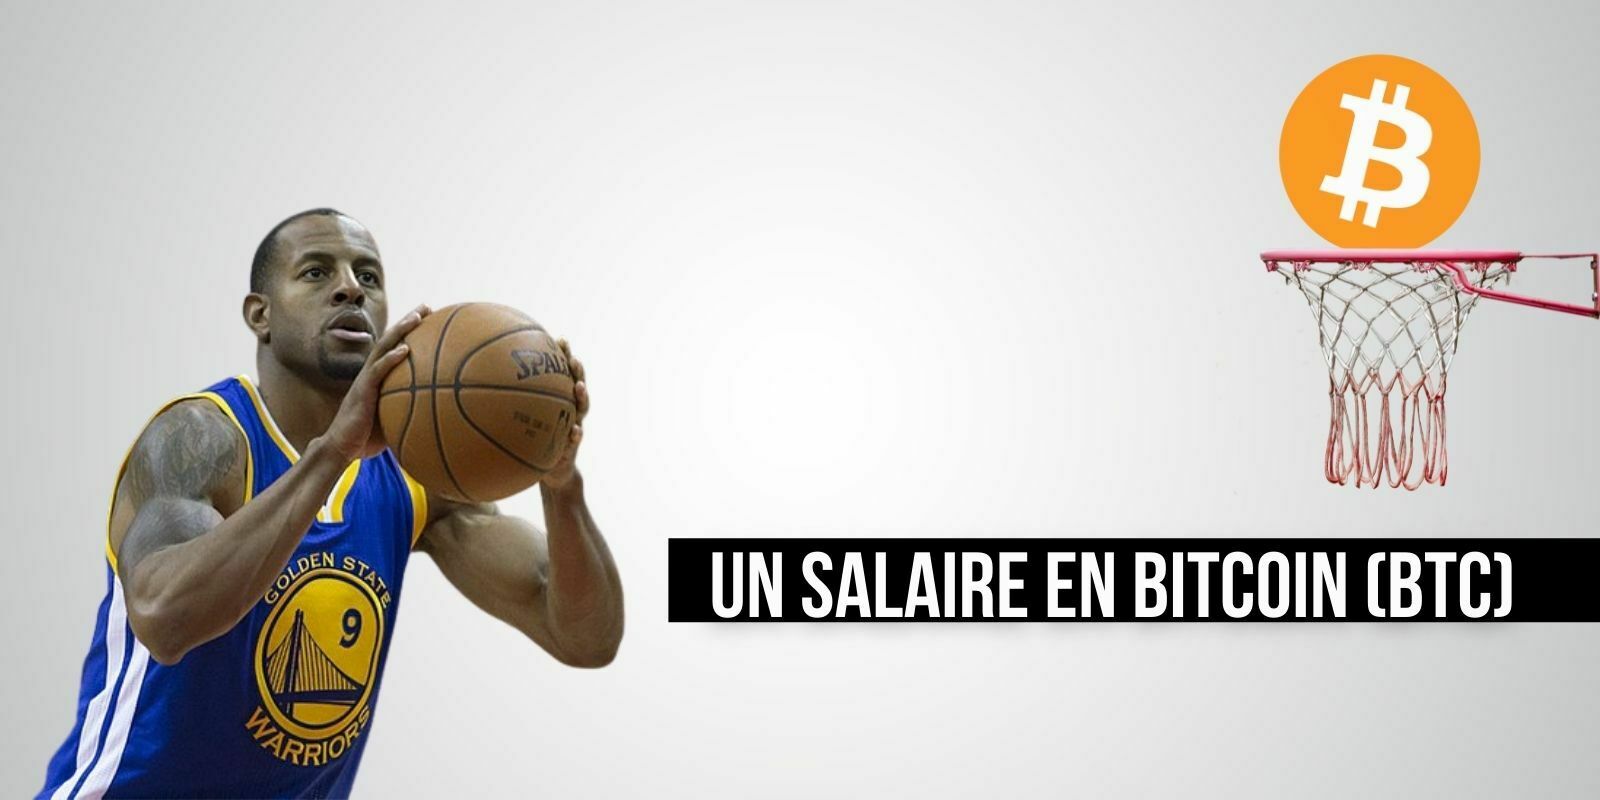 Le champion NBA Andre Iguodala va recevoir une partie de son salaire en bitcoin (BTC)